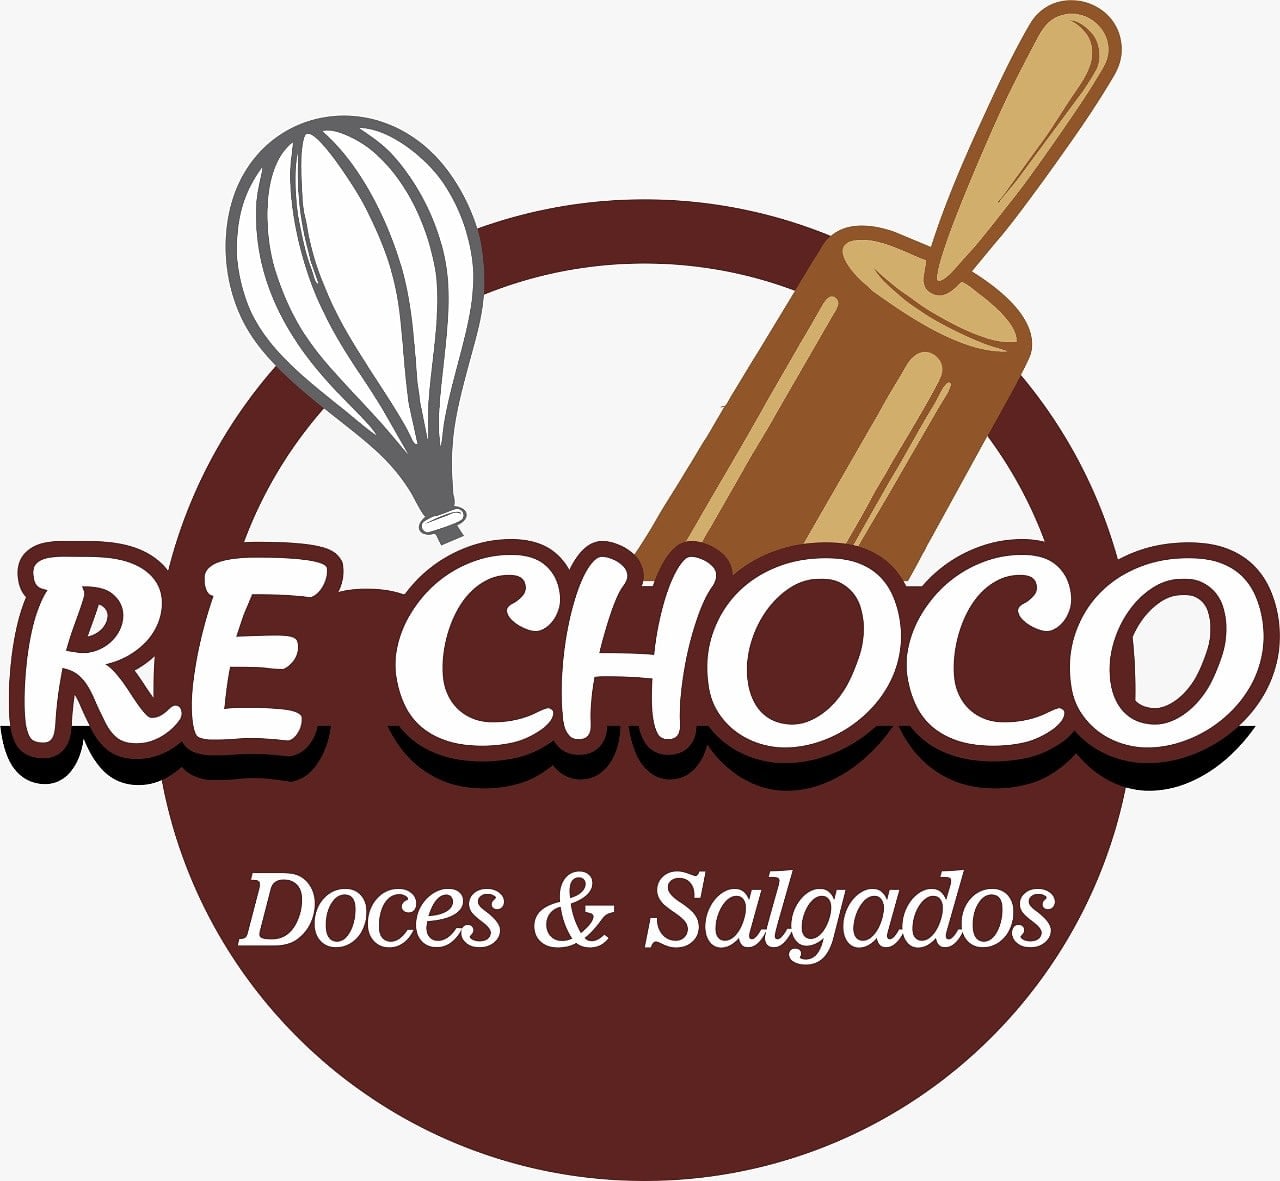 Re Choco Doces & Salgados